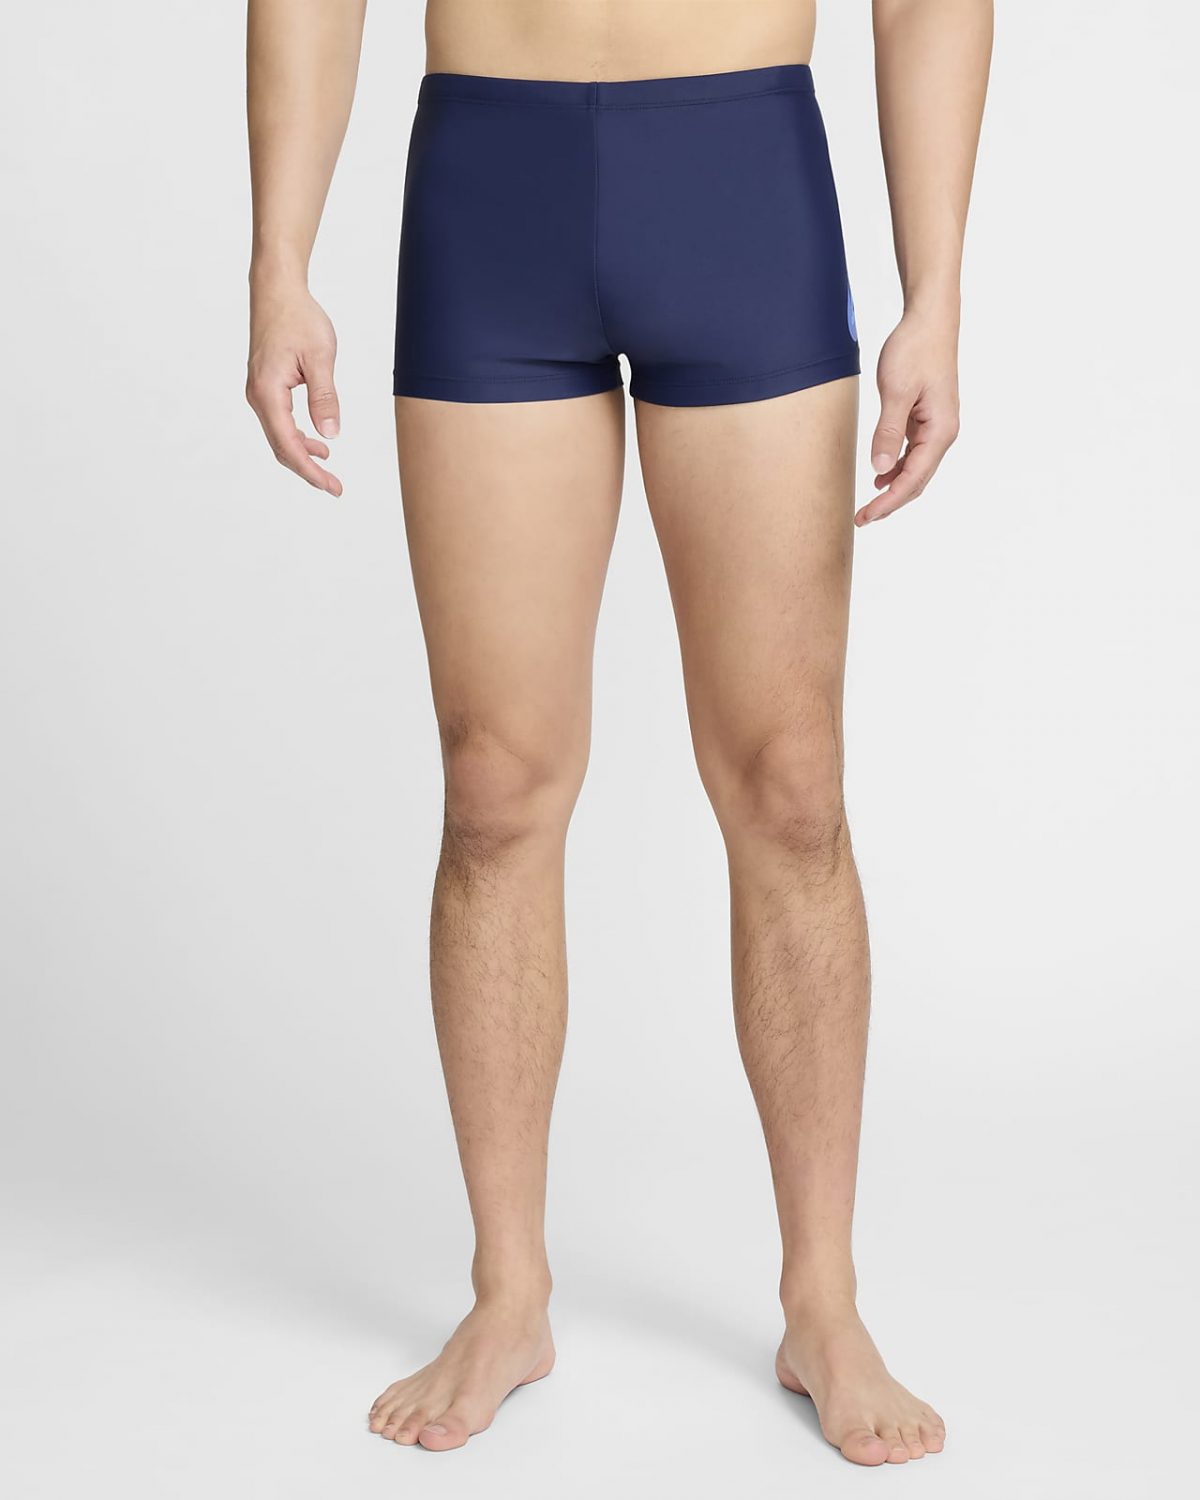 Мужские брюки Nike Swim фото